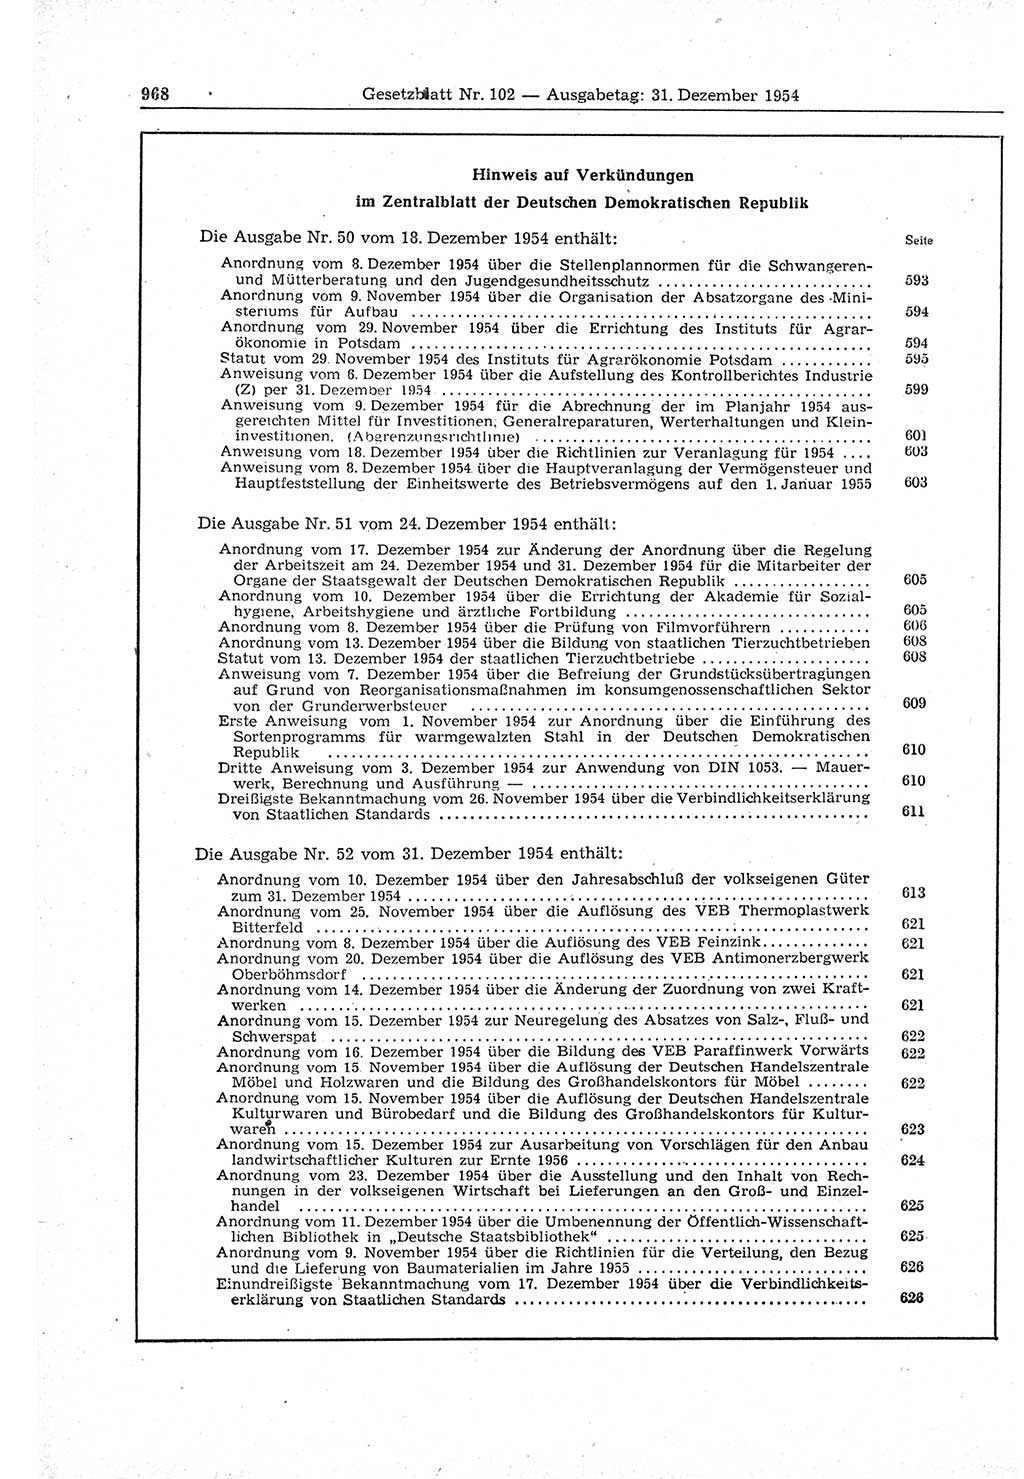 Gesetzblatt (GBl.) der Deutschen Demokratischen Republik (DDR) 1954, Seite 968 (GBl. DDR 1954, S. 968)